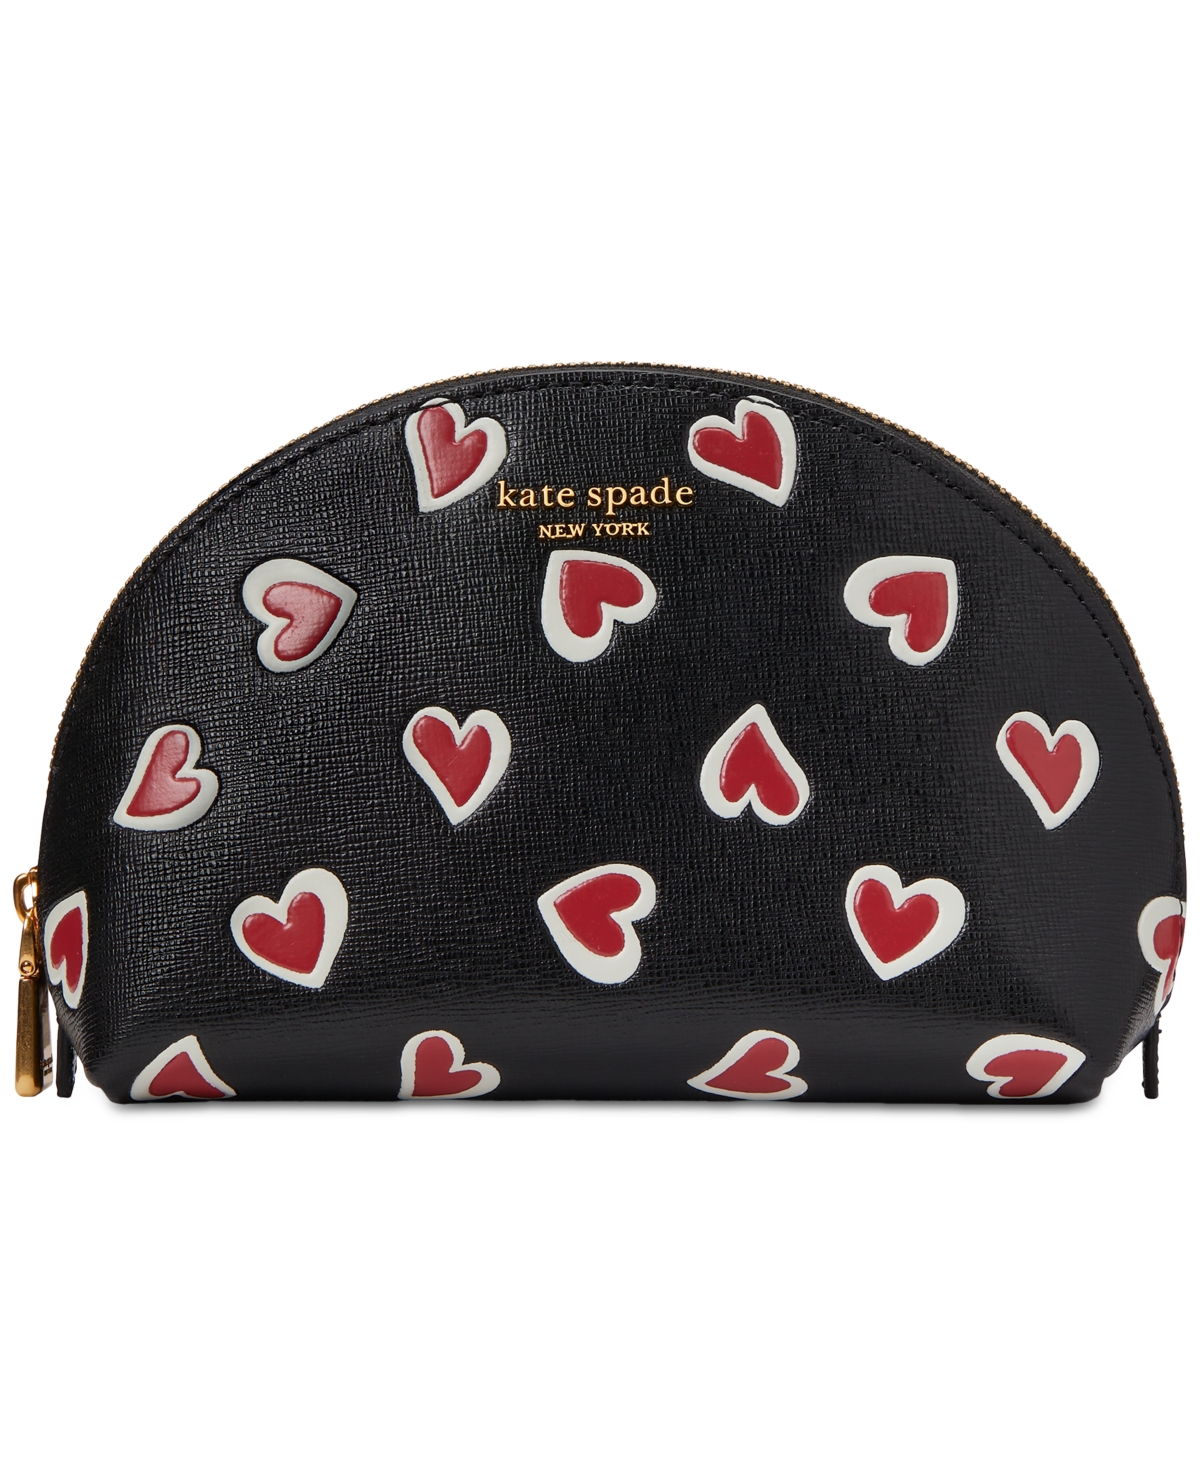 Morgan Stencil Hearts Embossed Printed Saffiano Leather Small Dome Cosmetic Bag - Black Multi.